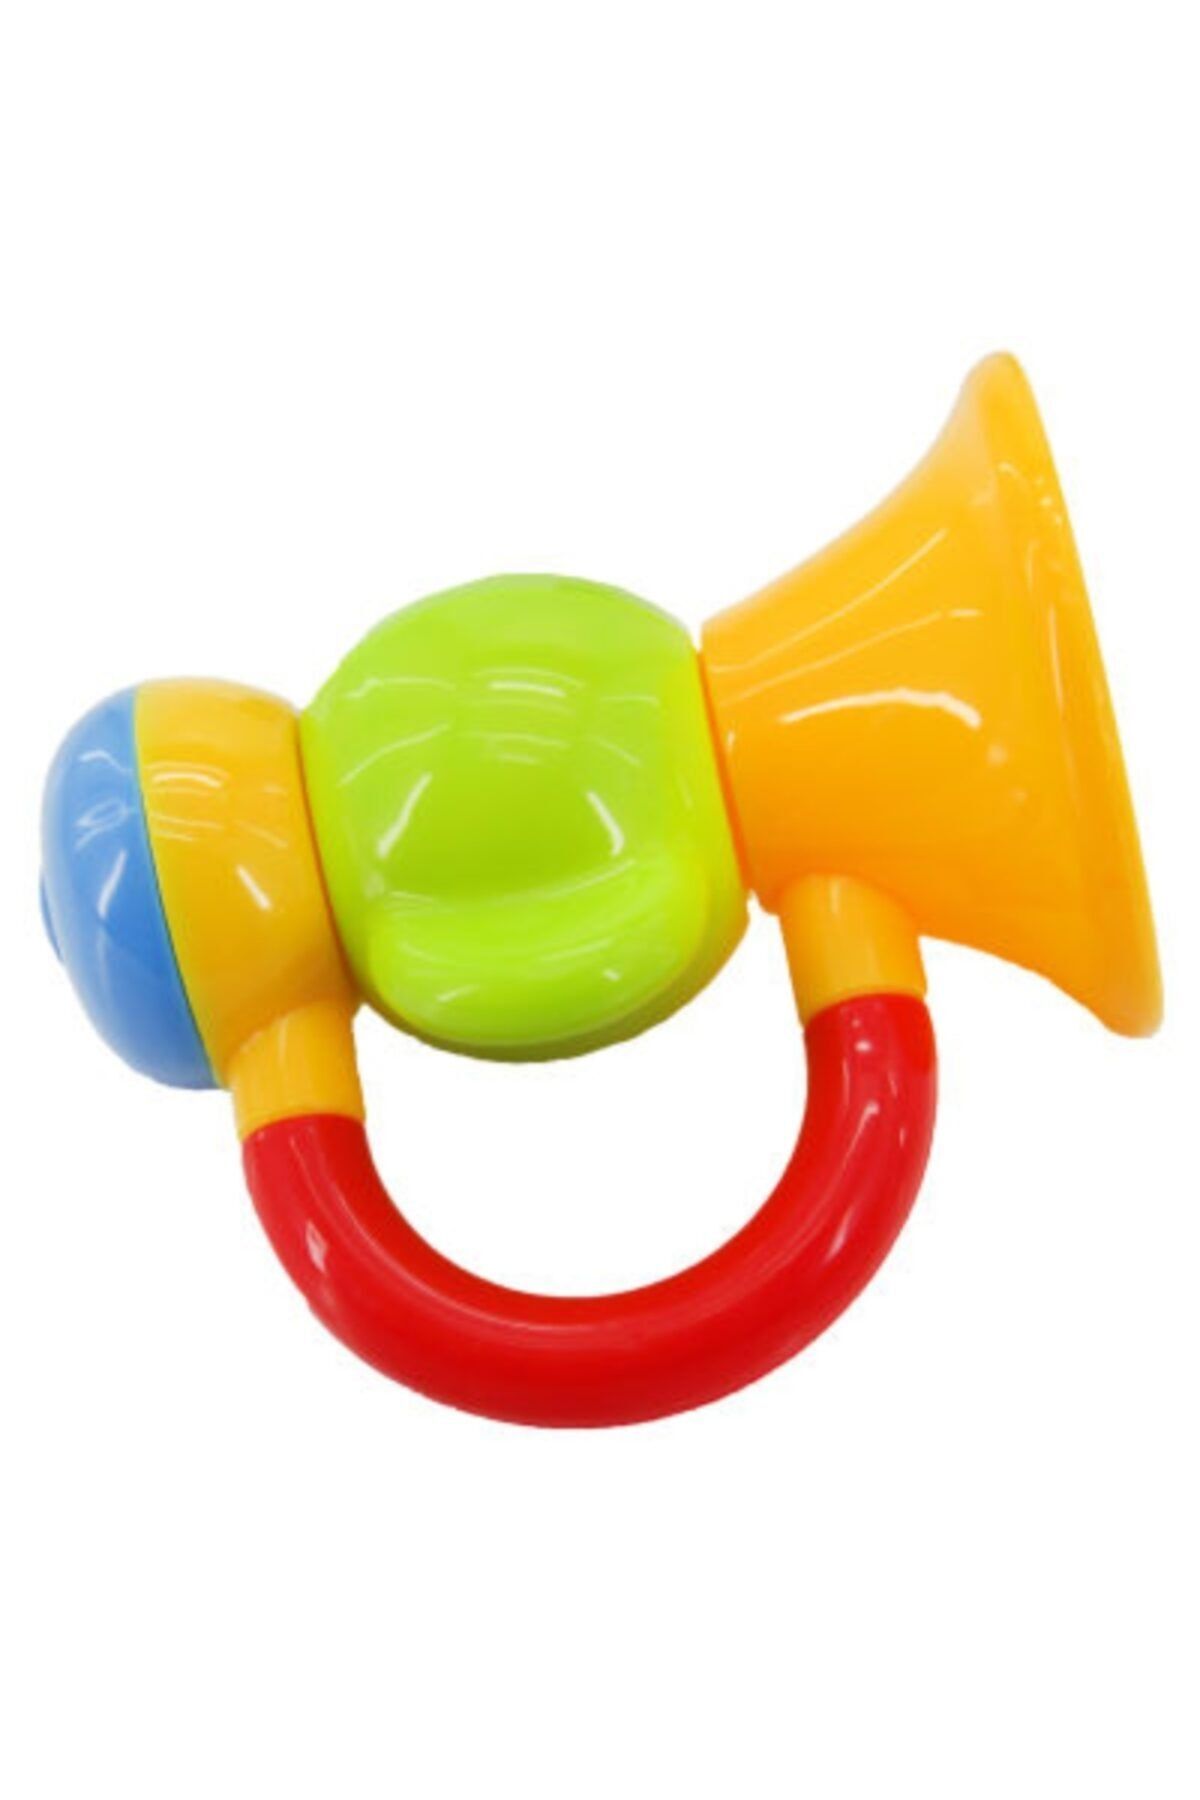 Babycim Trompet Çıngırak - Yeşil